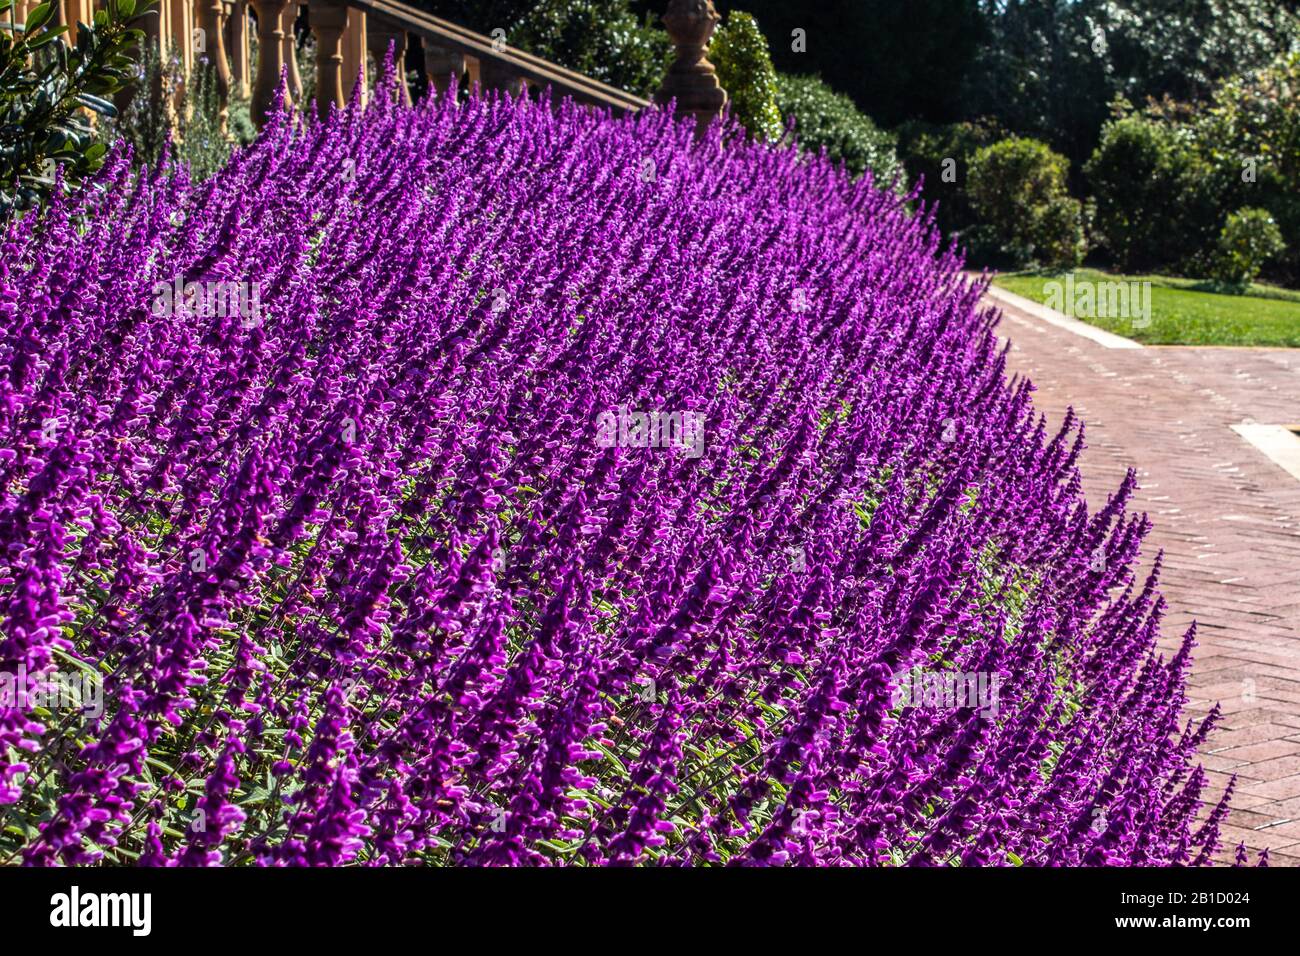 Viola lilla Salvia fiori messa piantare in giardino con percorso lastricato, scala, alberi Foto Stock